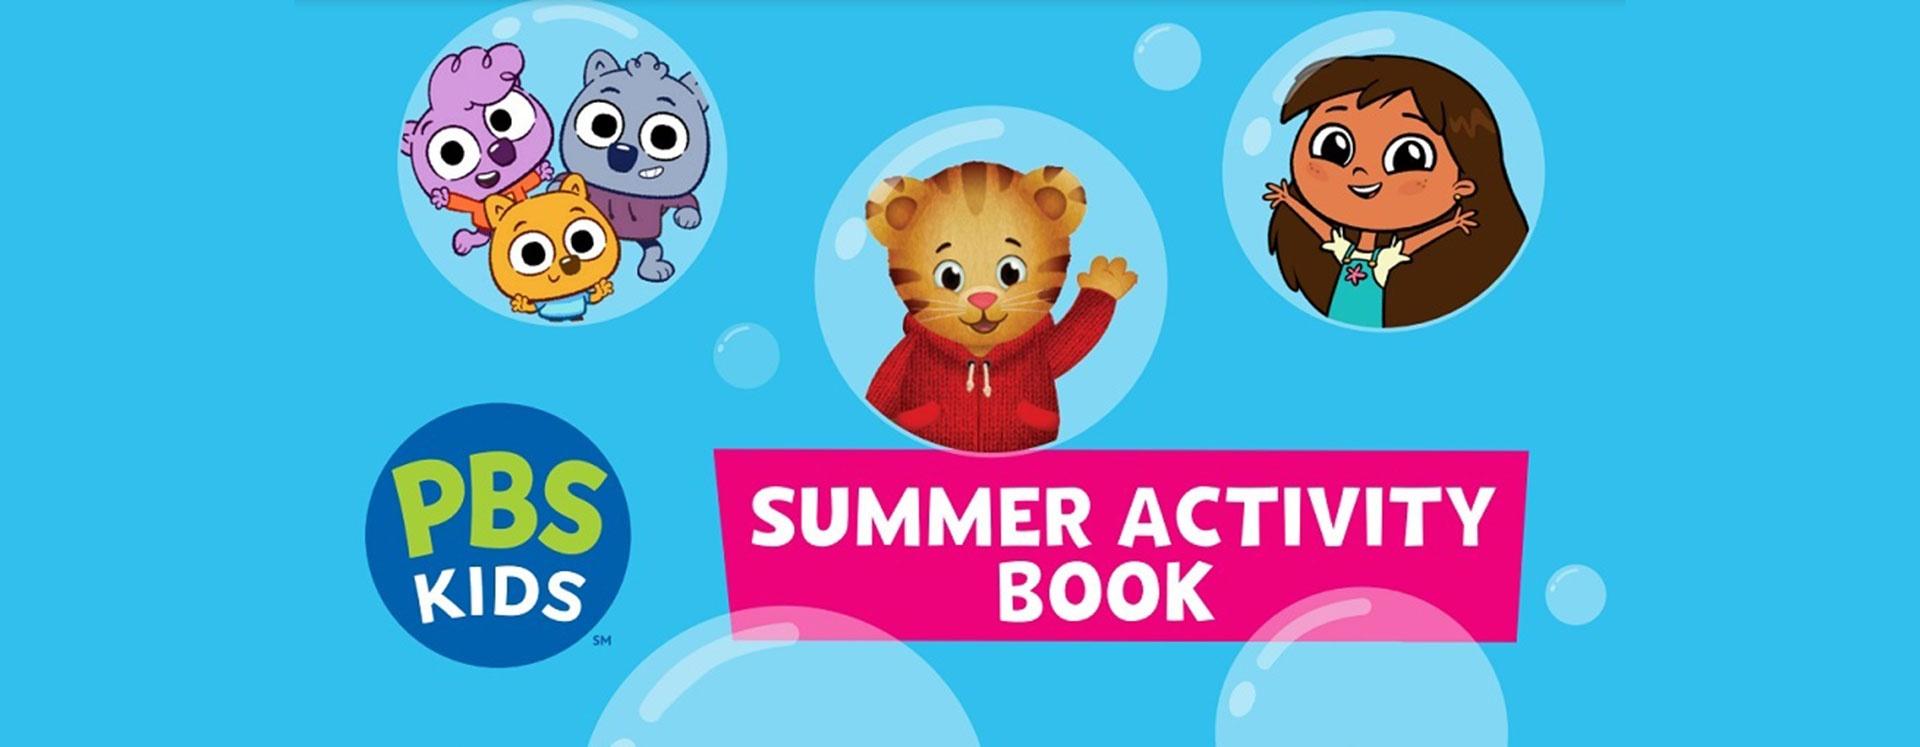 PBS KIDS Summer Activity Book